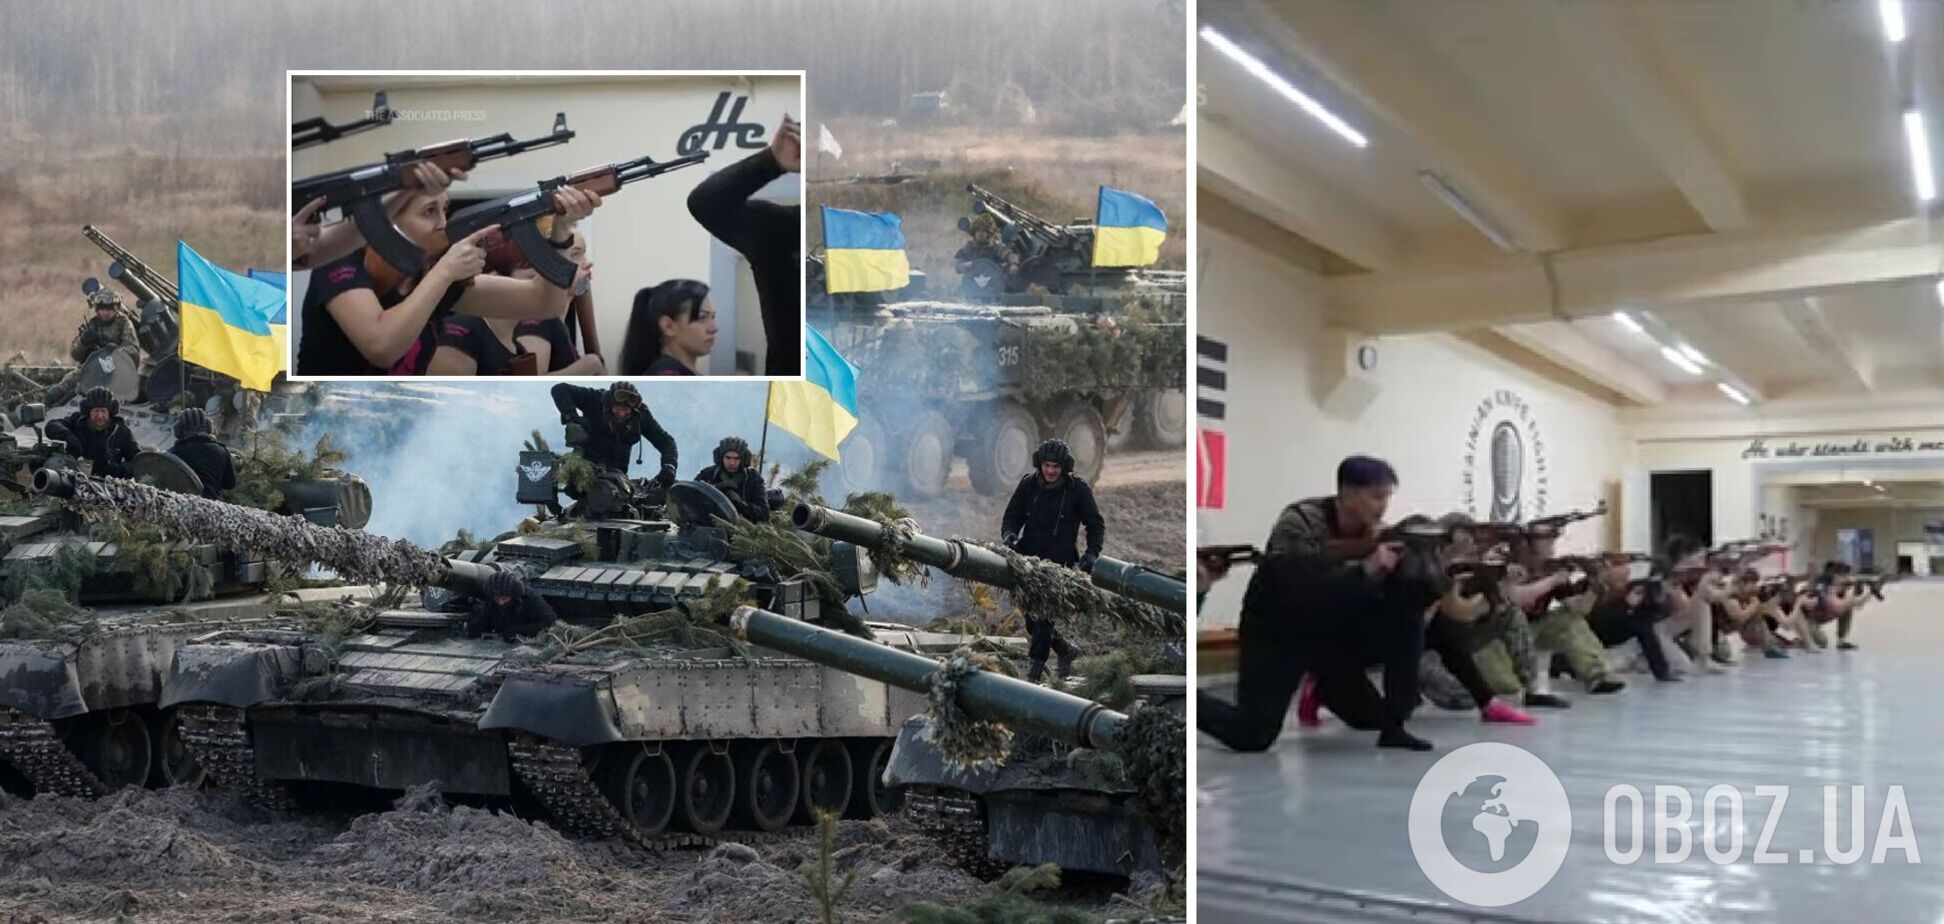 'Ми візьмемо зброю та захистимо наше місто від РФ': 55-річна українка розповіла, навіщо їй військова підготовка. Відео